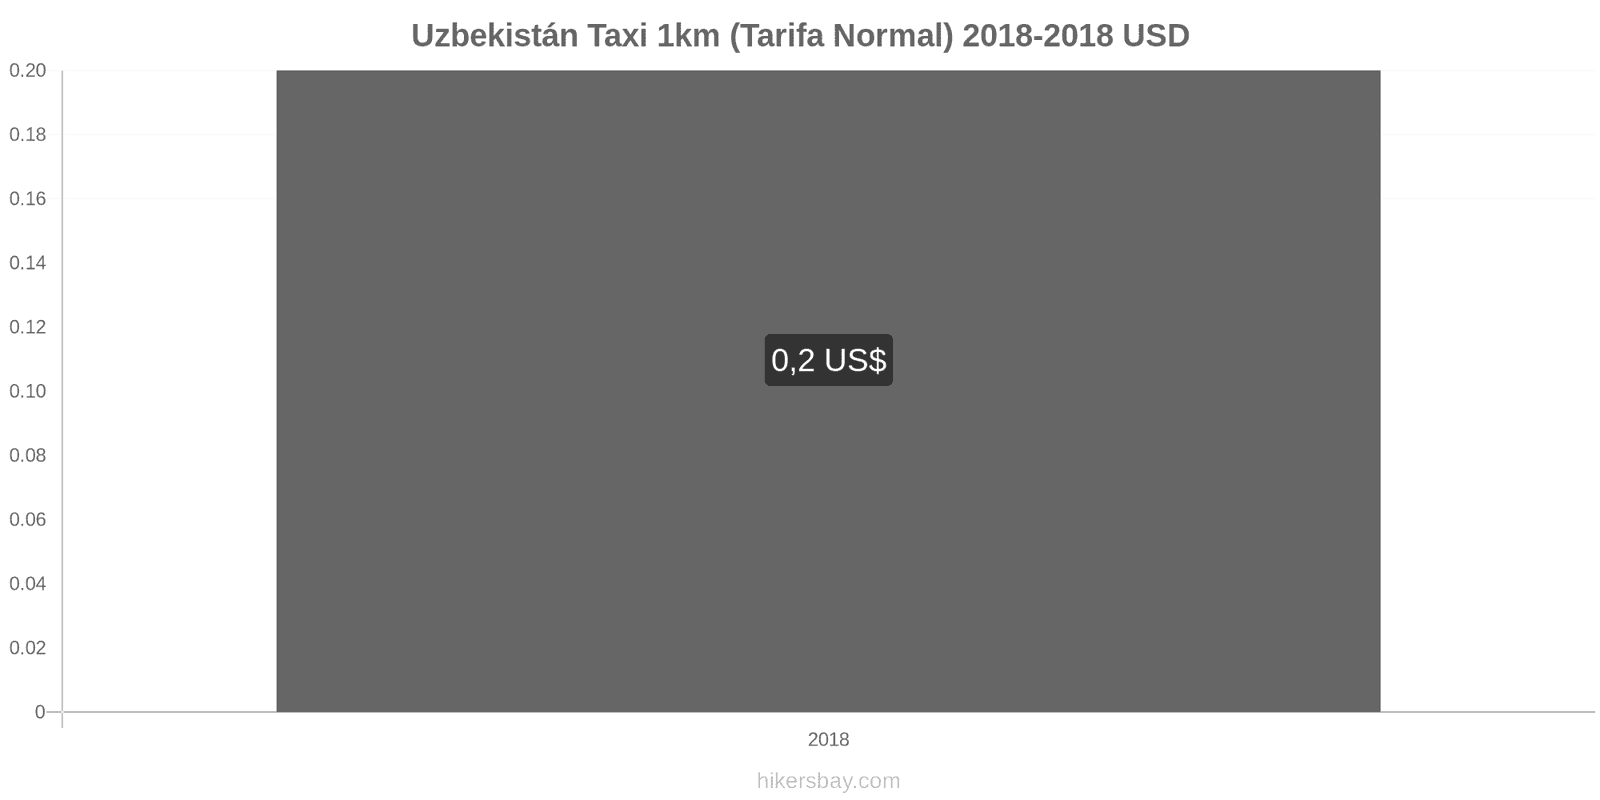 Uzbekistán cambios de precios Taxi 1km (tarifa normal) hikersbay.com